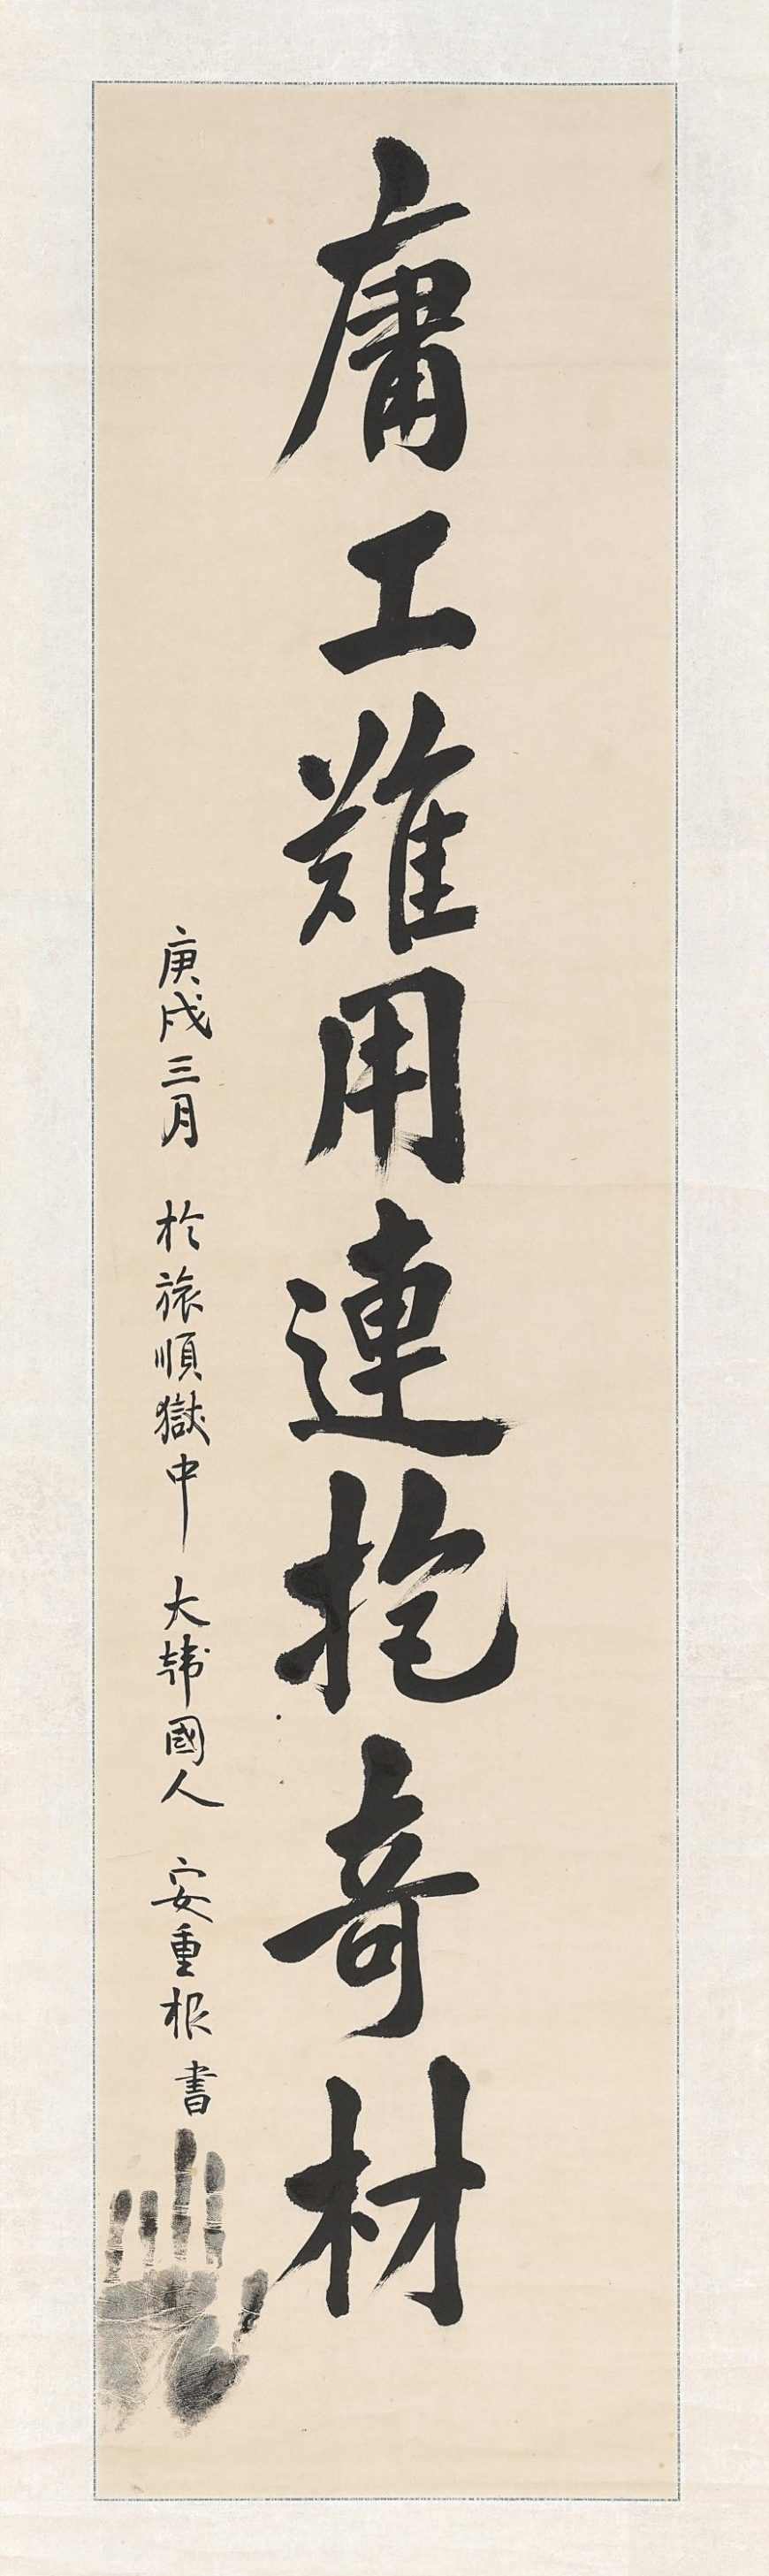 An Junggeun, Calligraphy, March 1910, 137.4 x 33.4 cm (The National Museum of Korea, Treasure 569-7)